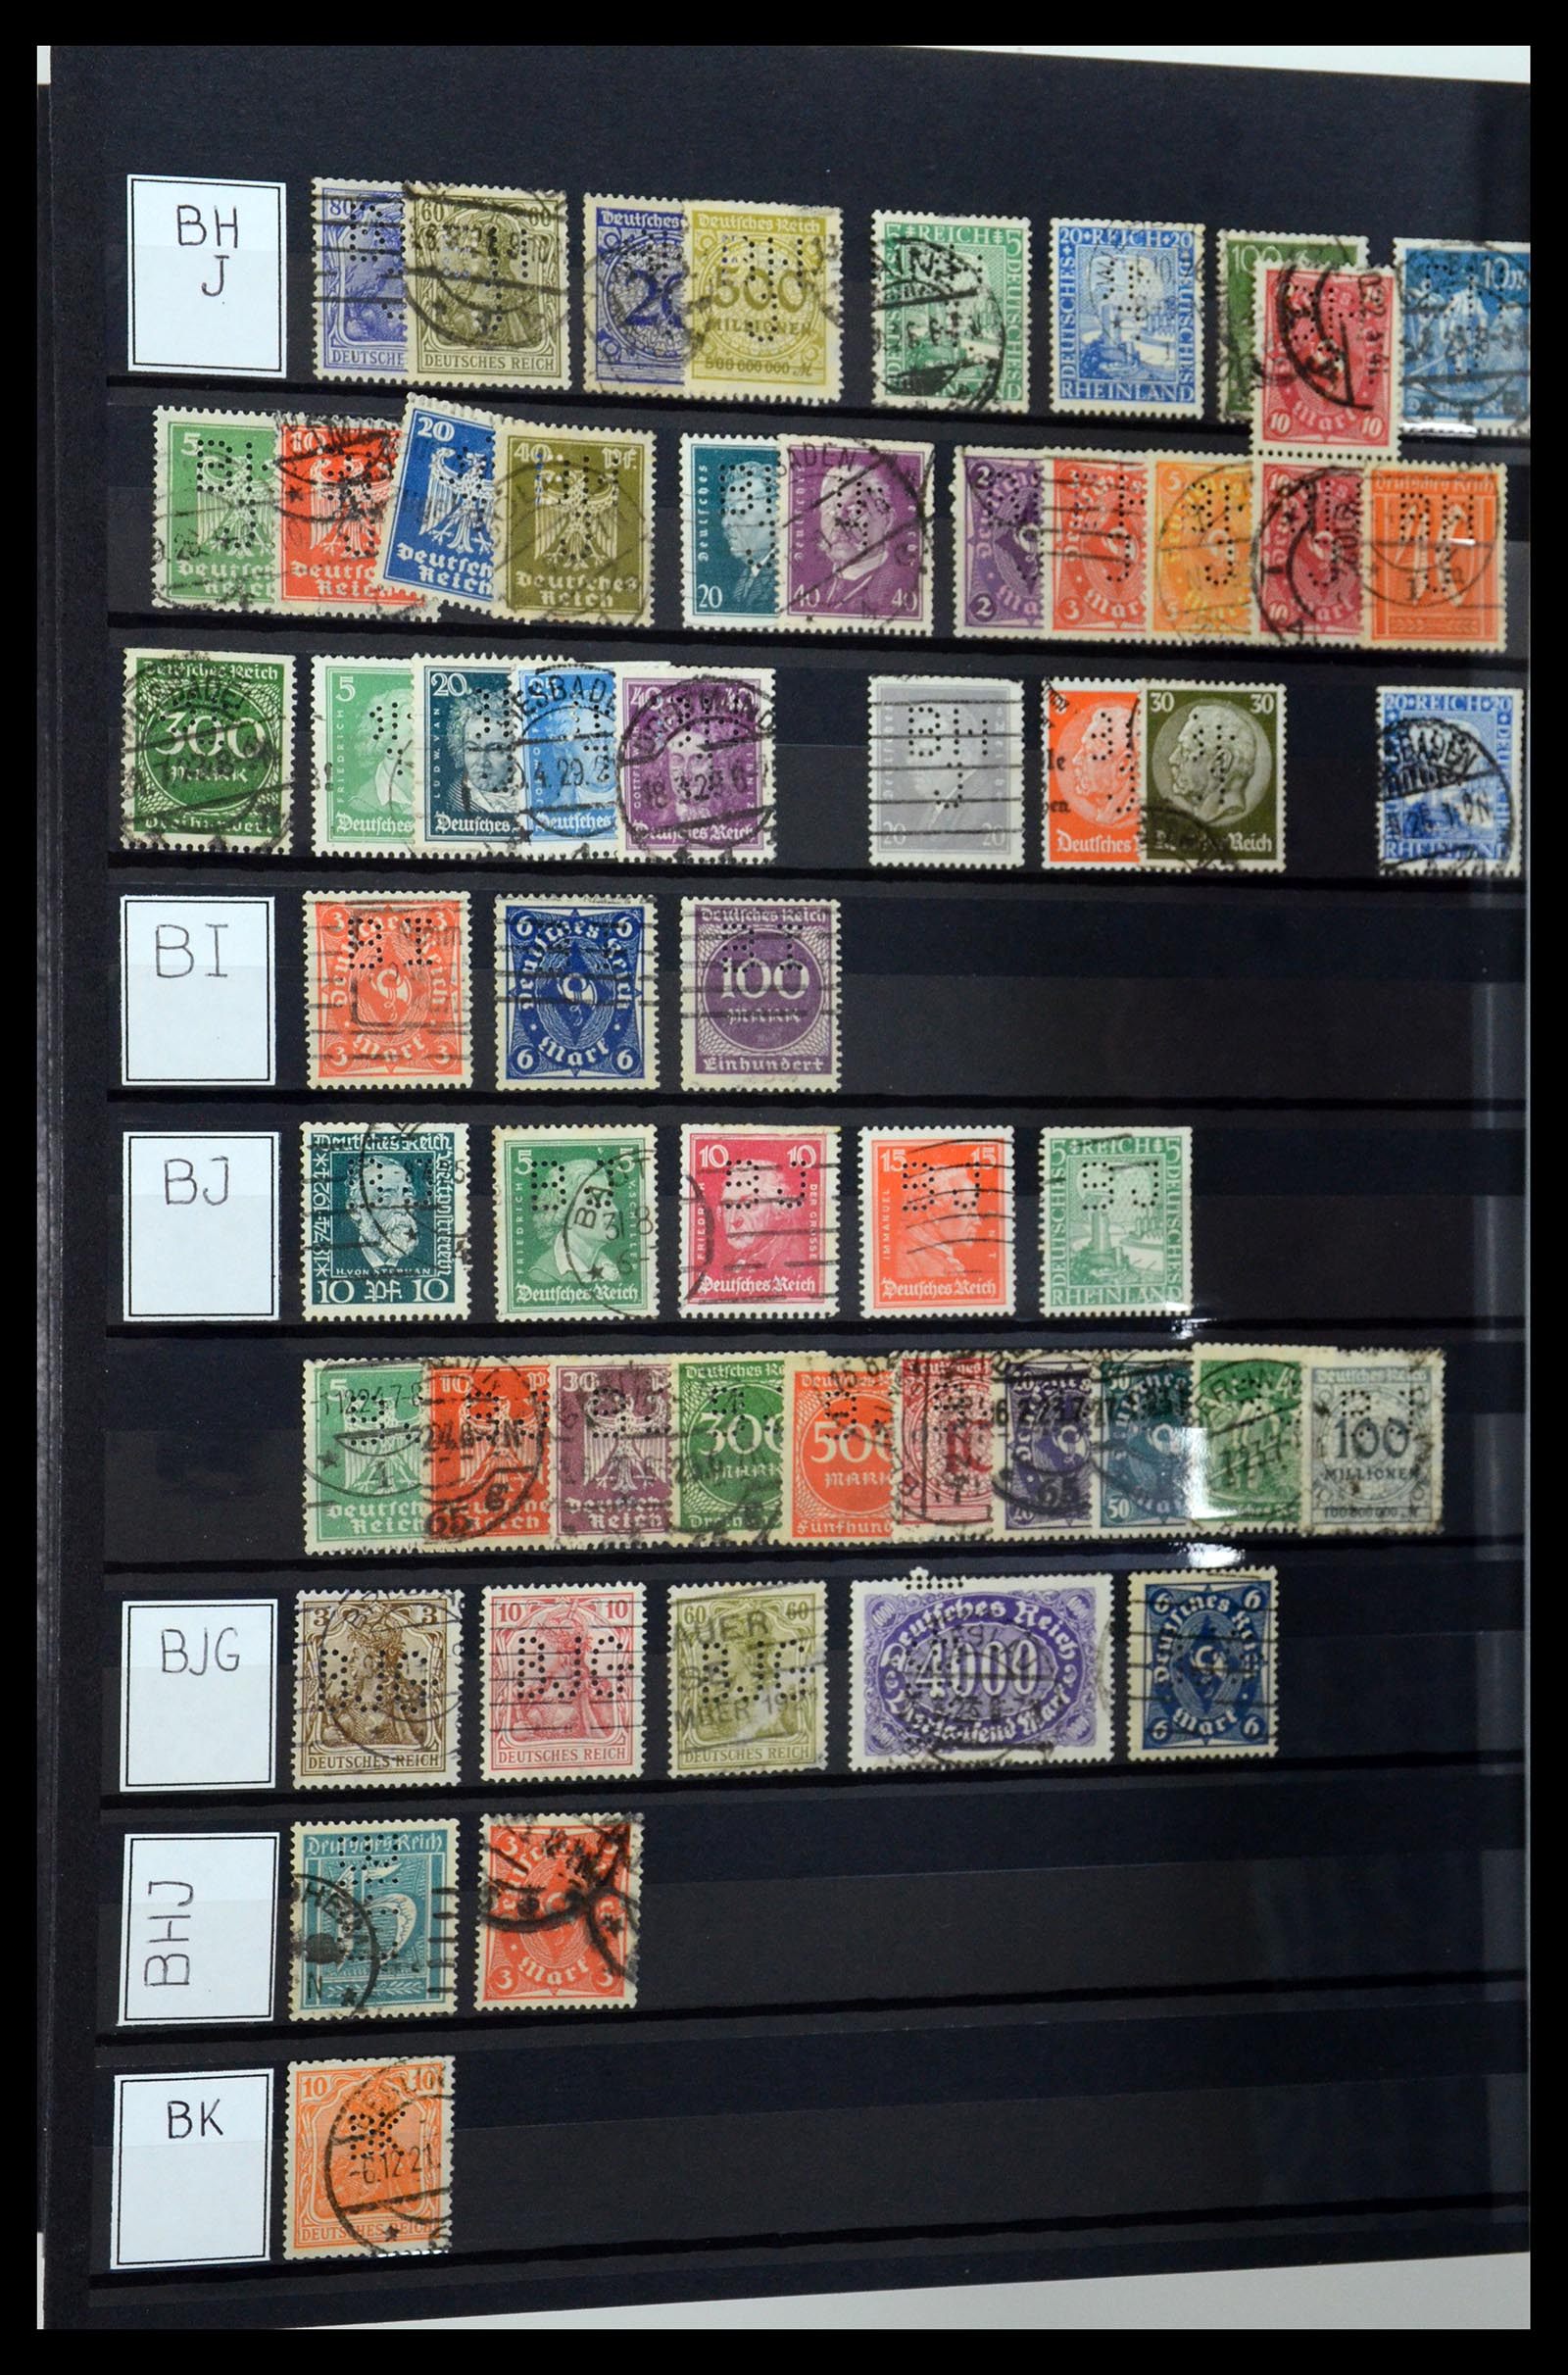 36405 042 - Stamp collection 36405 German Reich perfins 1880-1945.